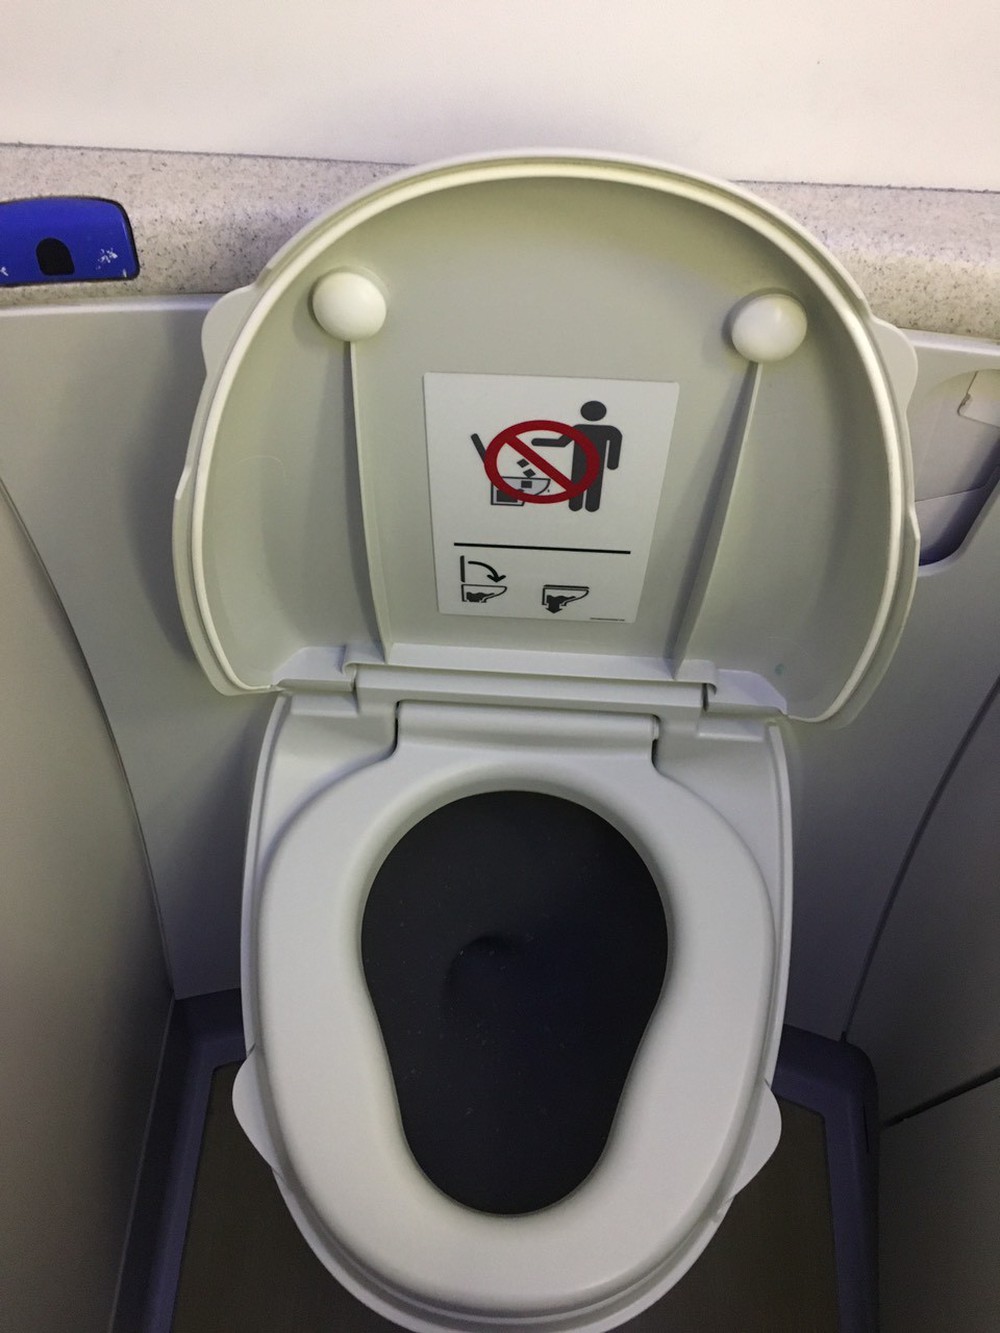 Rộ tin bồn cầu trên máy bay có thể  gây nguy hiểm cho người sử dụng, nhân viên hàng không đưa ra lời trần tình - Ảnh 3.